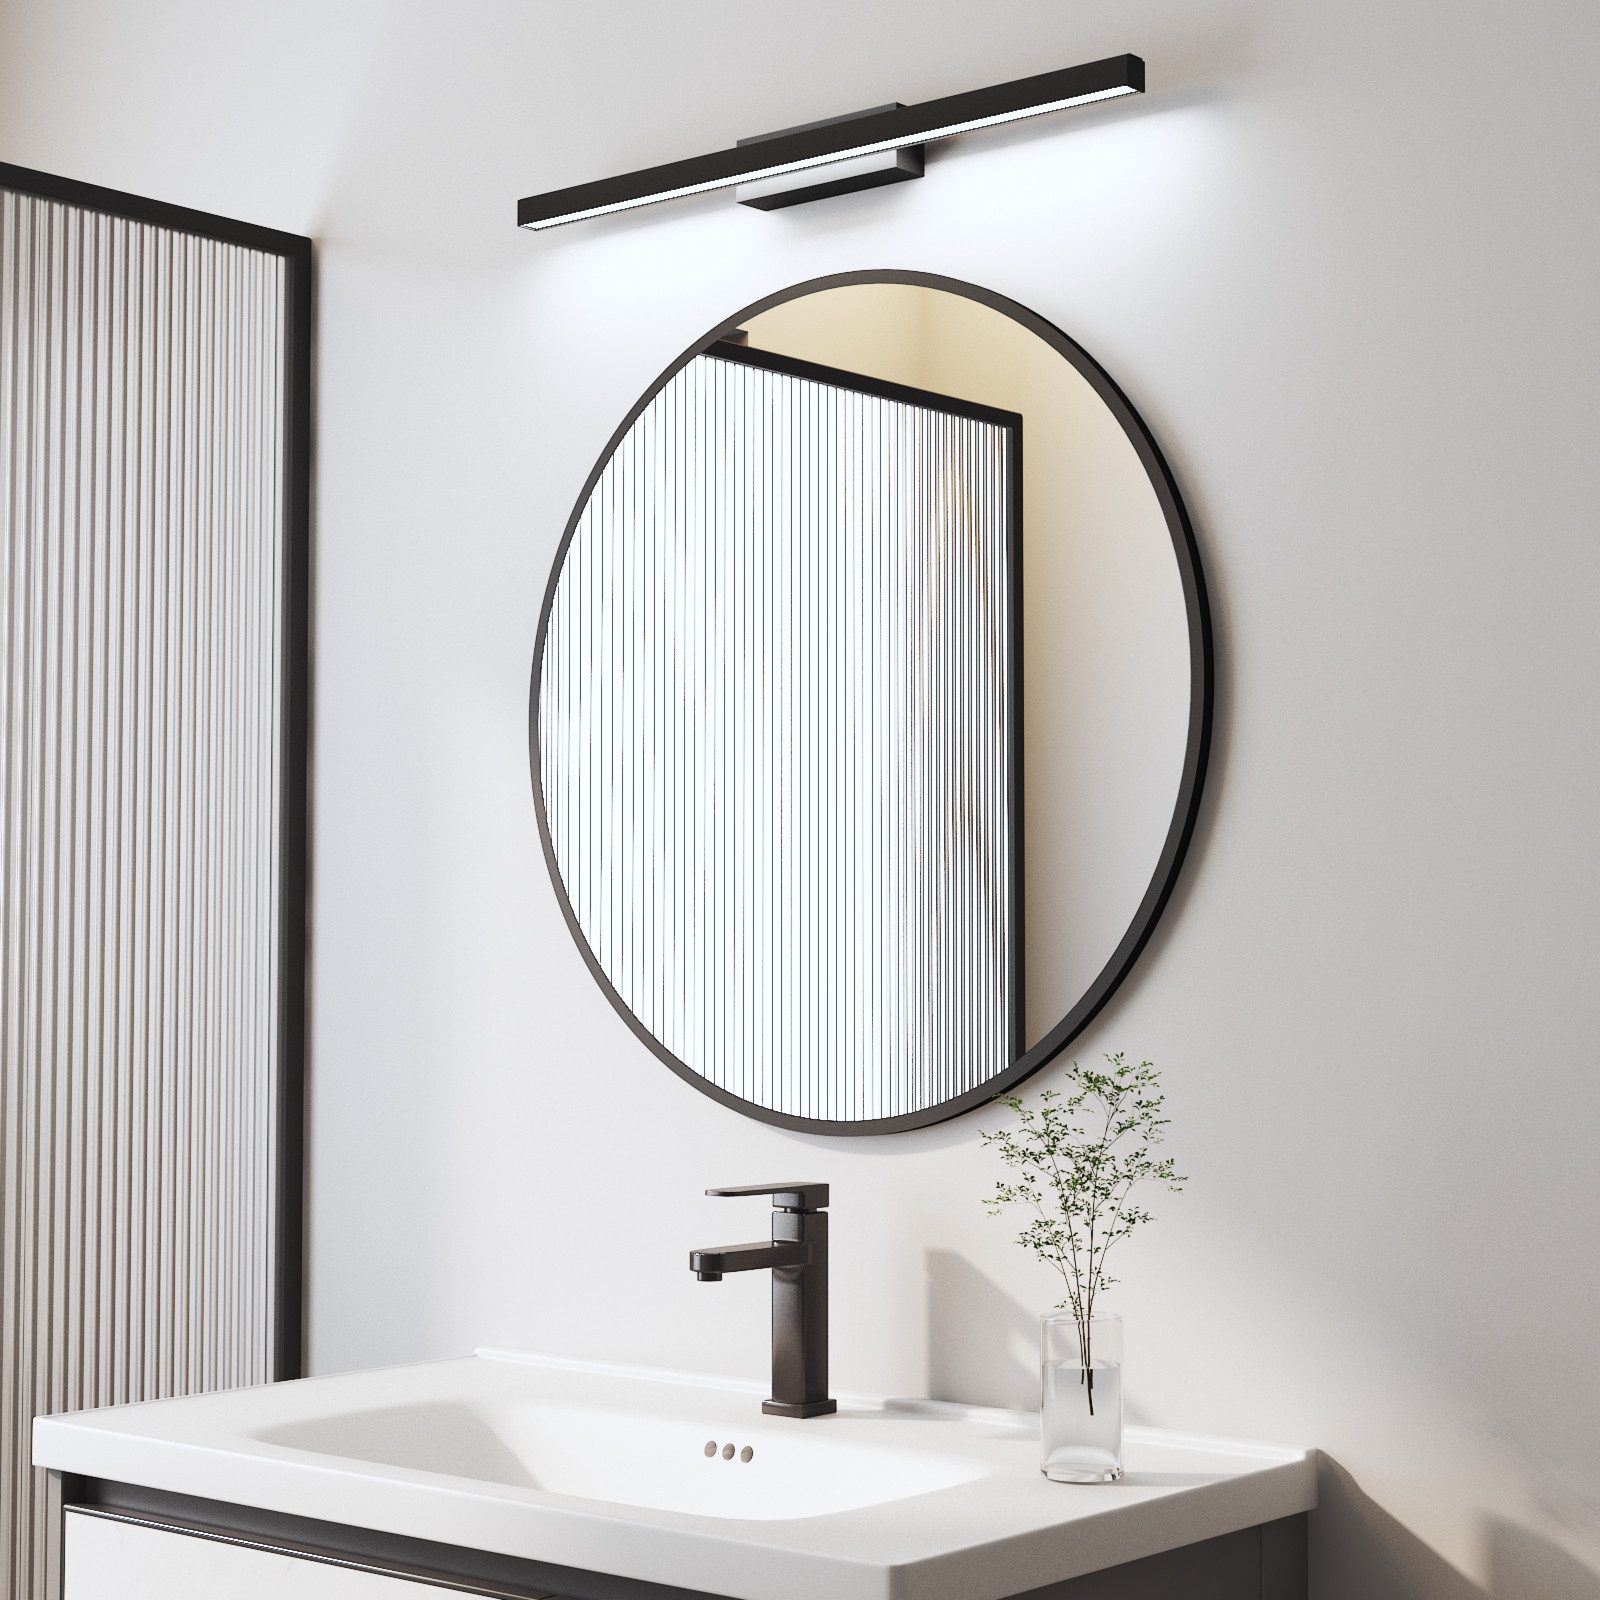 WDWRITTI Spiegel mit licht Badspiegel Rundspiegel mit 60cm LED Wandleuchte Kaltweiß (Wandspiegel Rund, Ø80/70/60/50/40cm), HD Spiegel mit Metall Rahmen, energiesparender